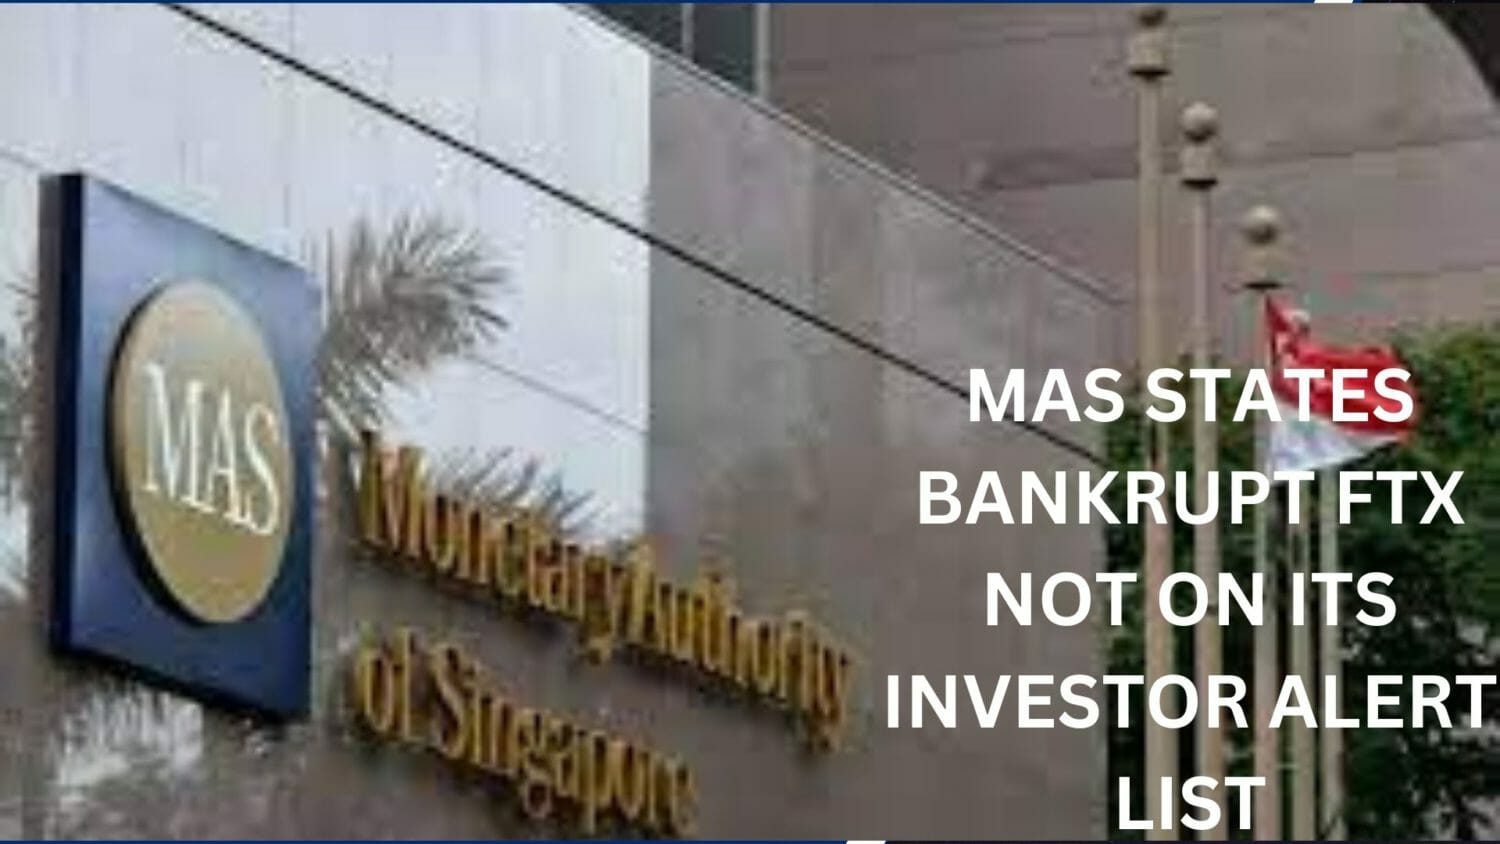 Mas States Bankrupt Ftx Not On Its Investor Alert List